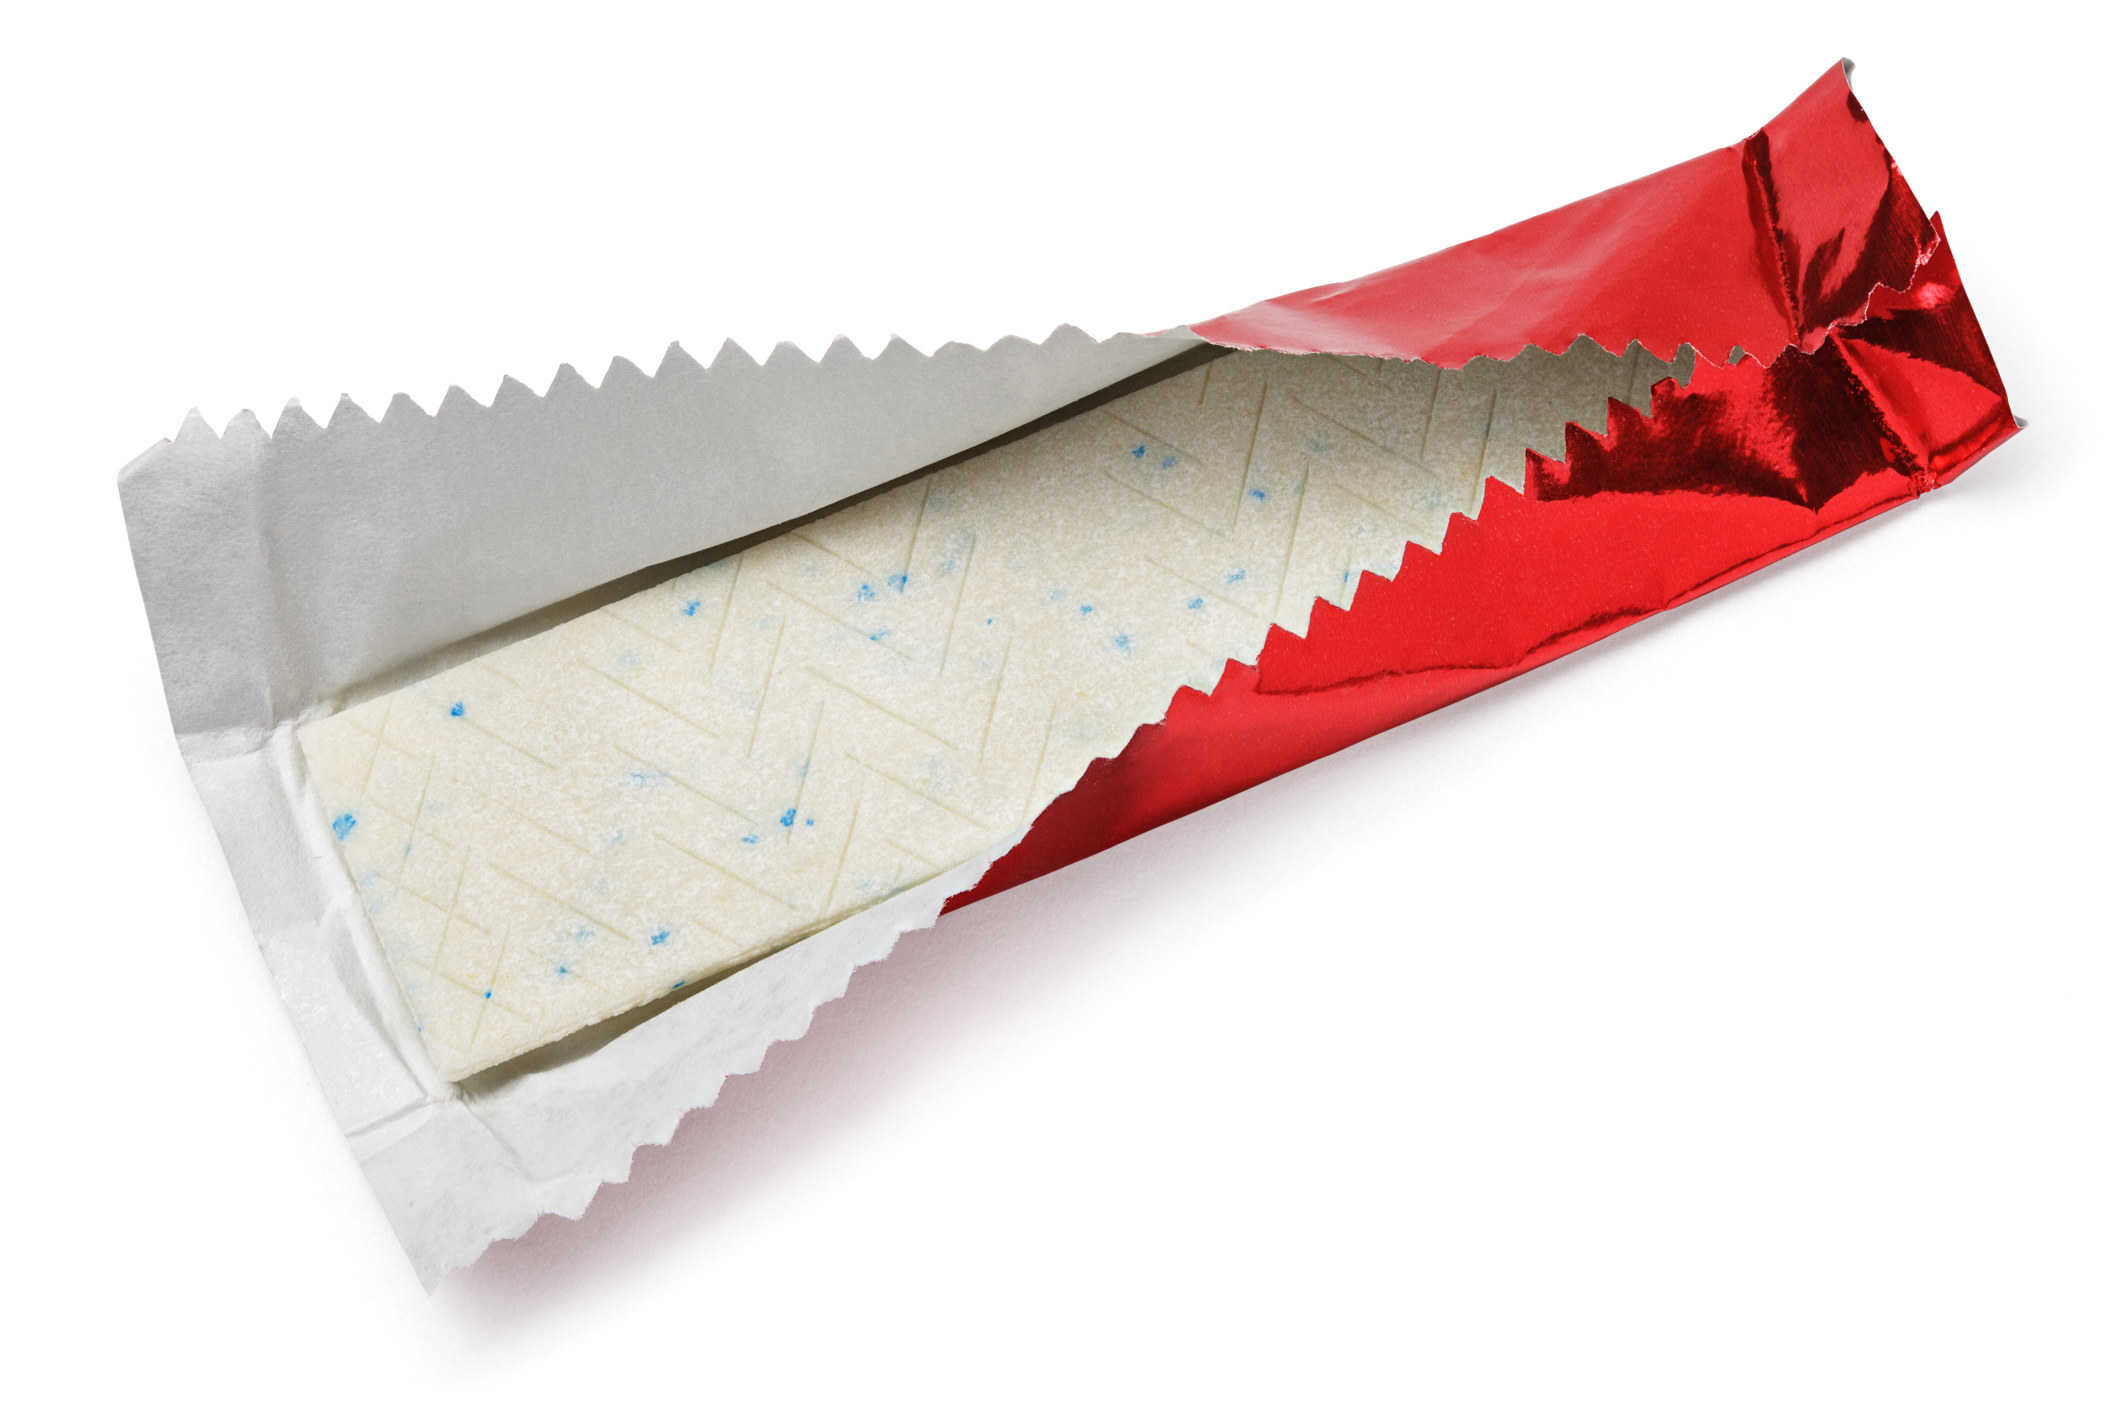 Gum inside a wrapper